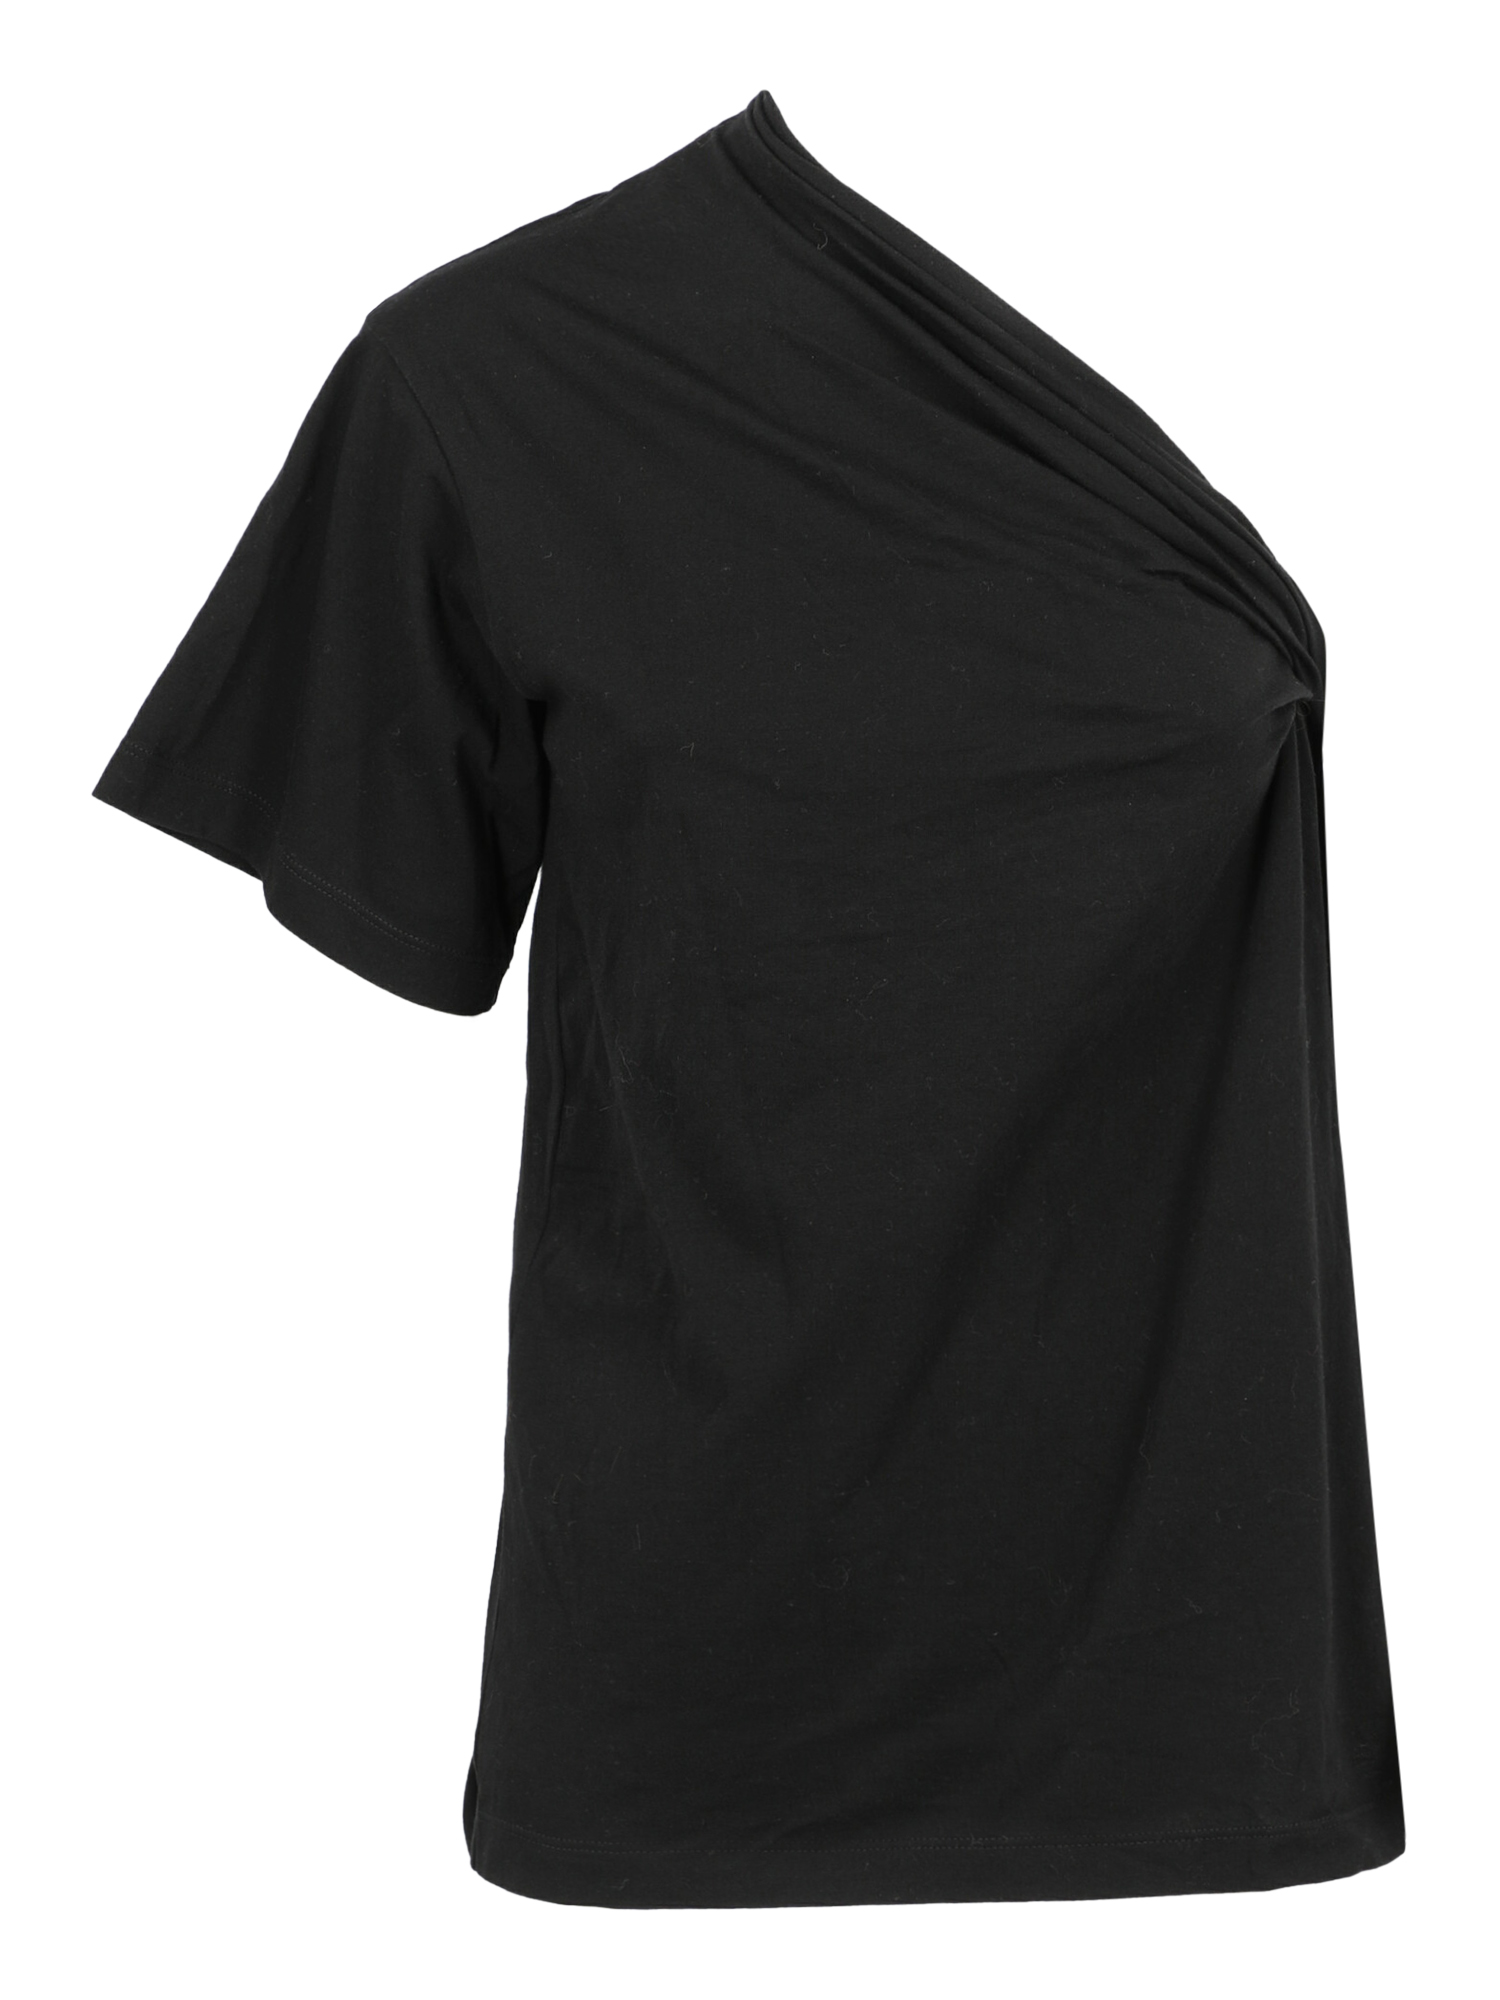 N 21 Femme T-shirts et tops Black Cotton